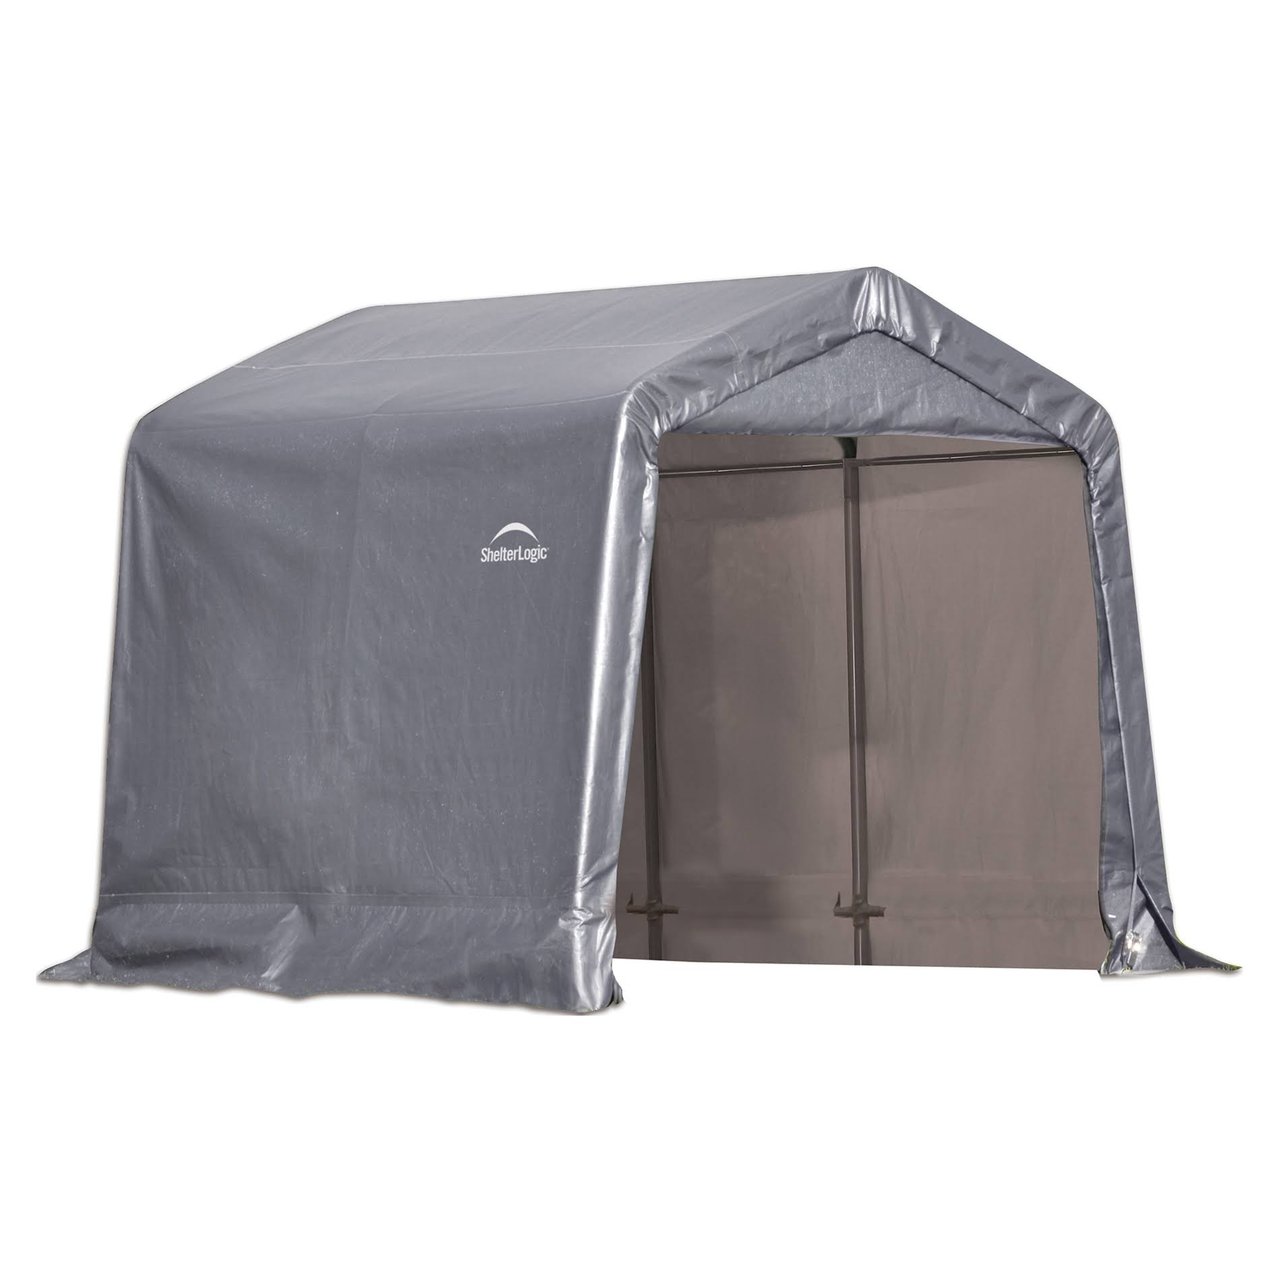 3 Shelter Logic Peak Style Storage Shed, 8' × 8' × 8', Gray